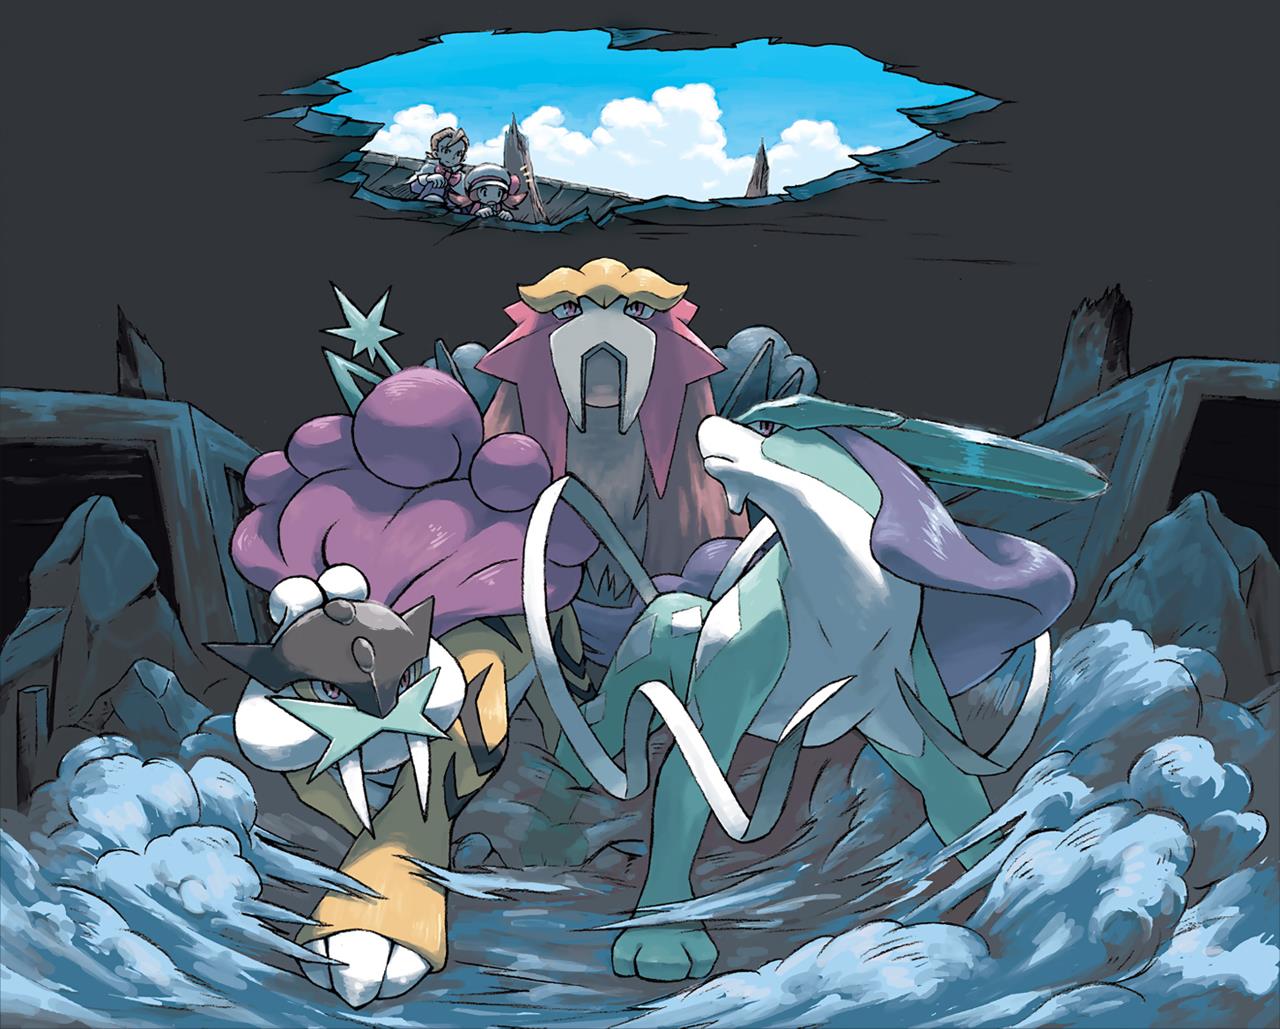 Suicune, Raikou, và Entei là bộ 3 Thần Thú trong các Pokemon huyền thoại